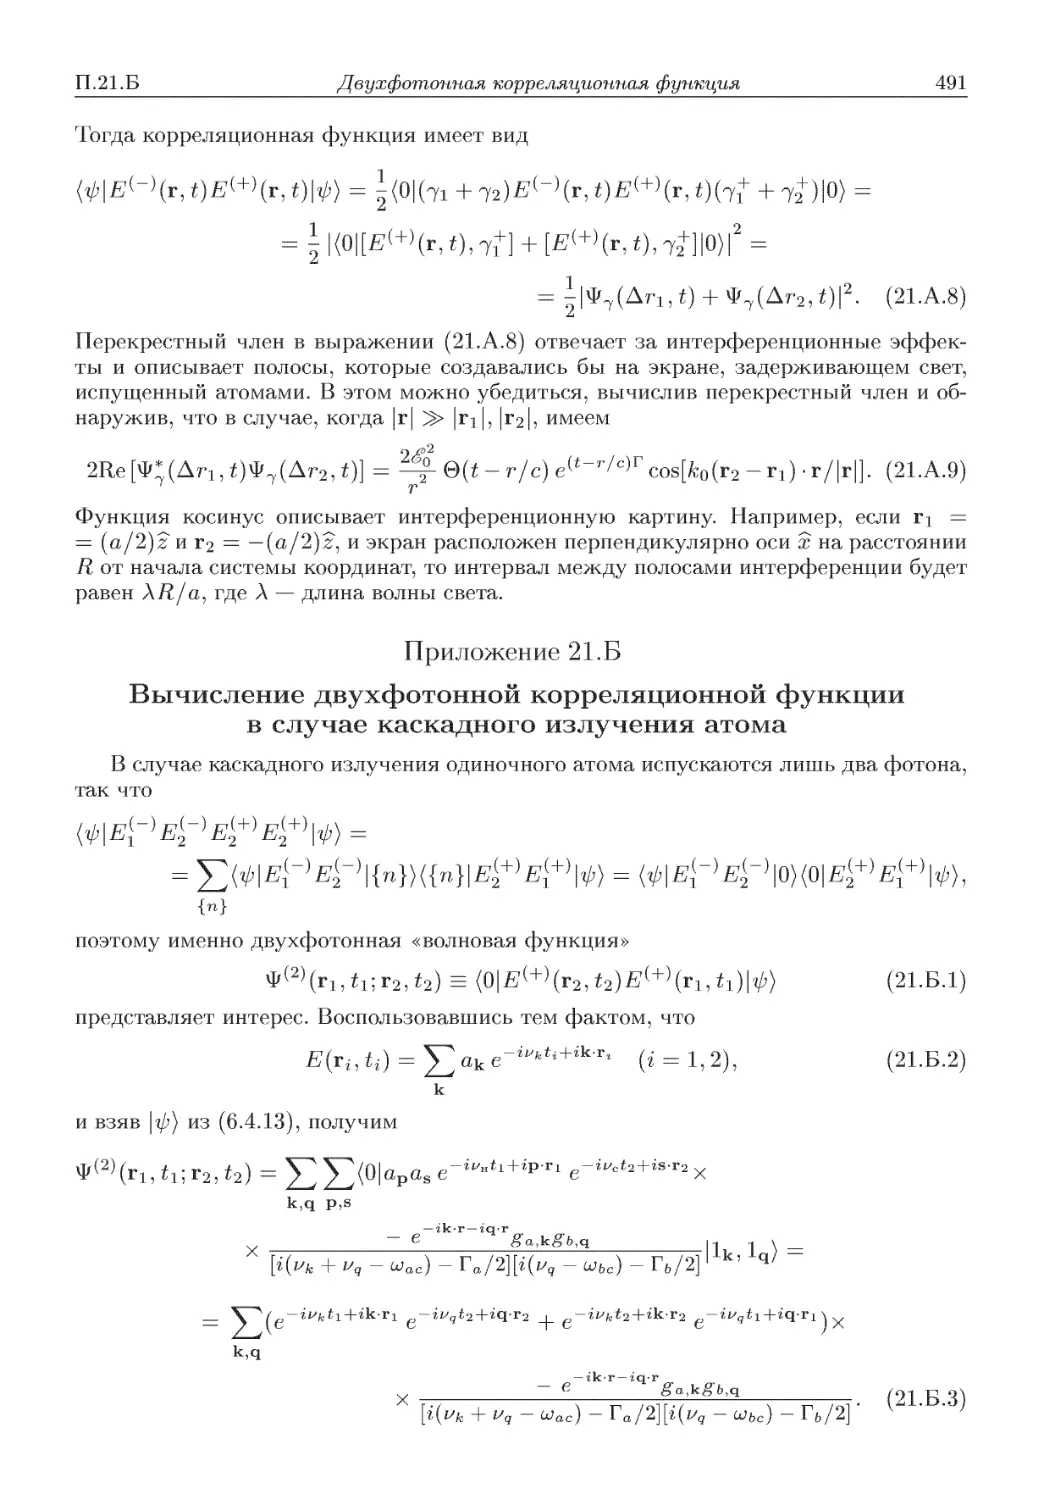 Приложение 21.Б. Вычисление двухфотонной корреляционной функции в случае каскадного излучения атома